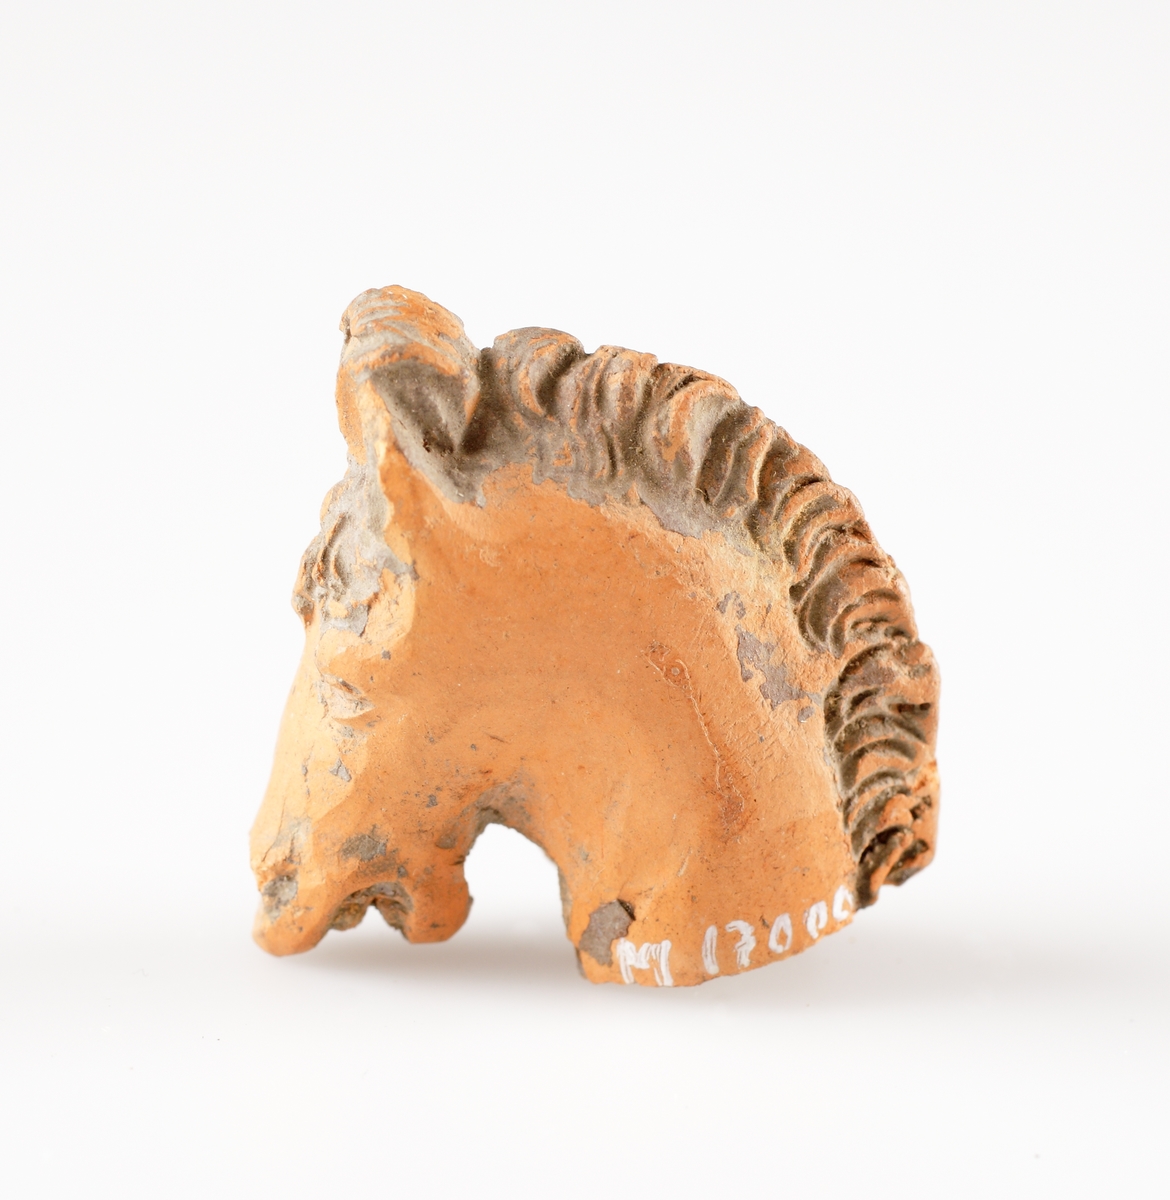 Fragment av en statyett i bränd lera, föreställande ett hästhuvud. Avbruten vid halsen. Ihålig. Sammanhör troligen med M 17000-2543 och 2544. Kan ha utgjort en ryttarstatyett. Troligen tillverkad i Nederländerna.